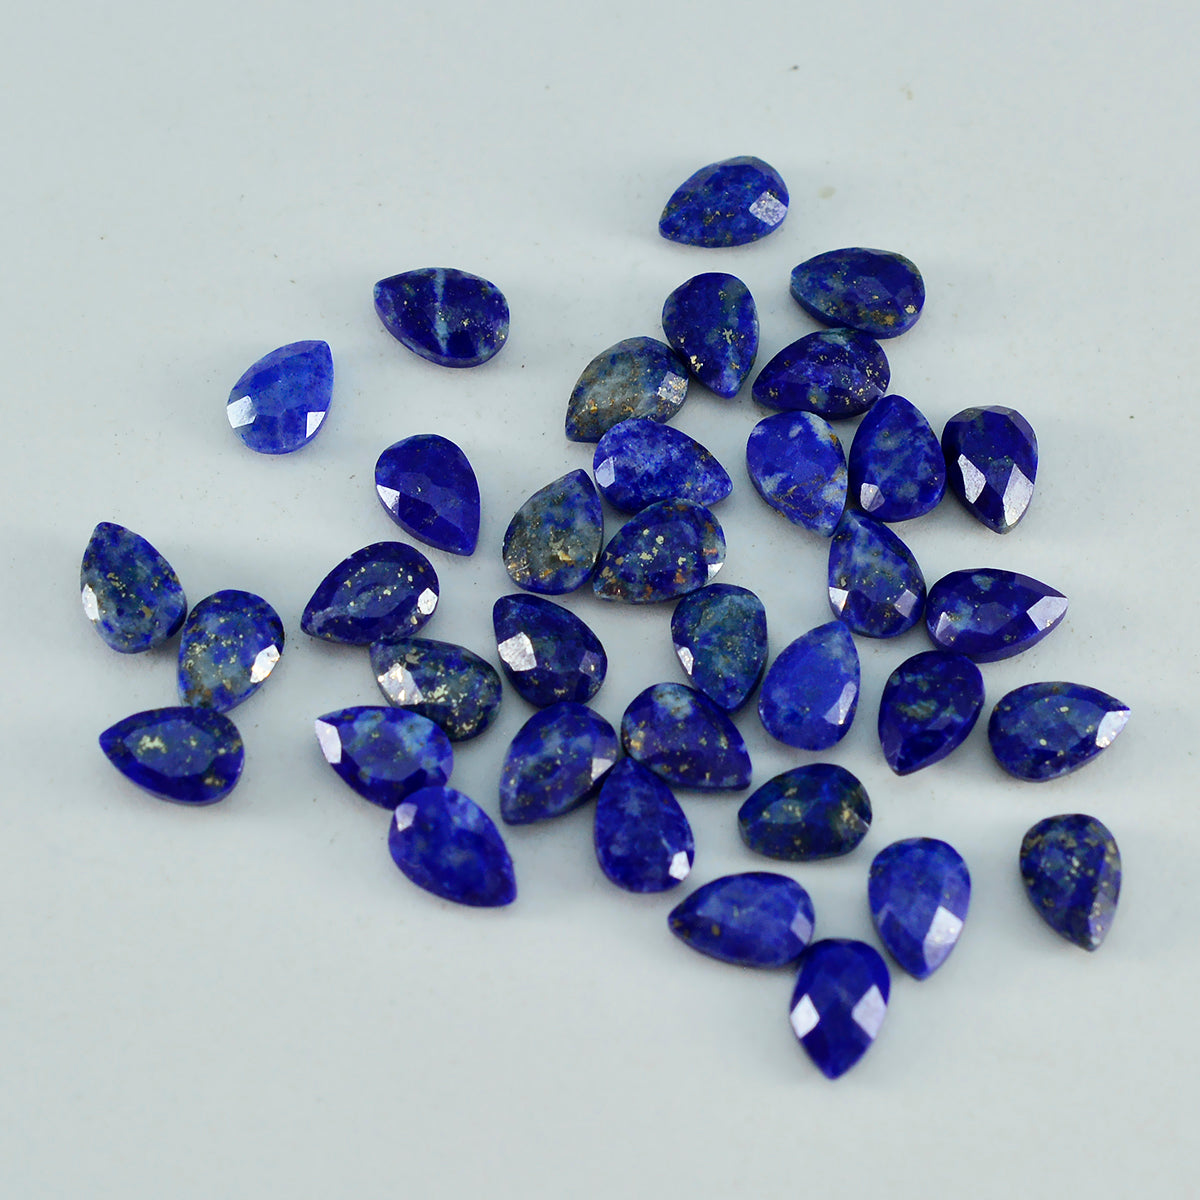 Riyogems 1 pièce de lapis-lazuli bleu véritable à facettes 3x5mm en forme de poire, pierres précieuses de grande qualité